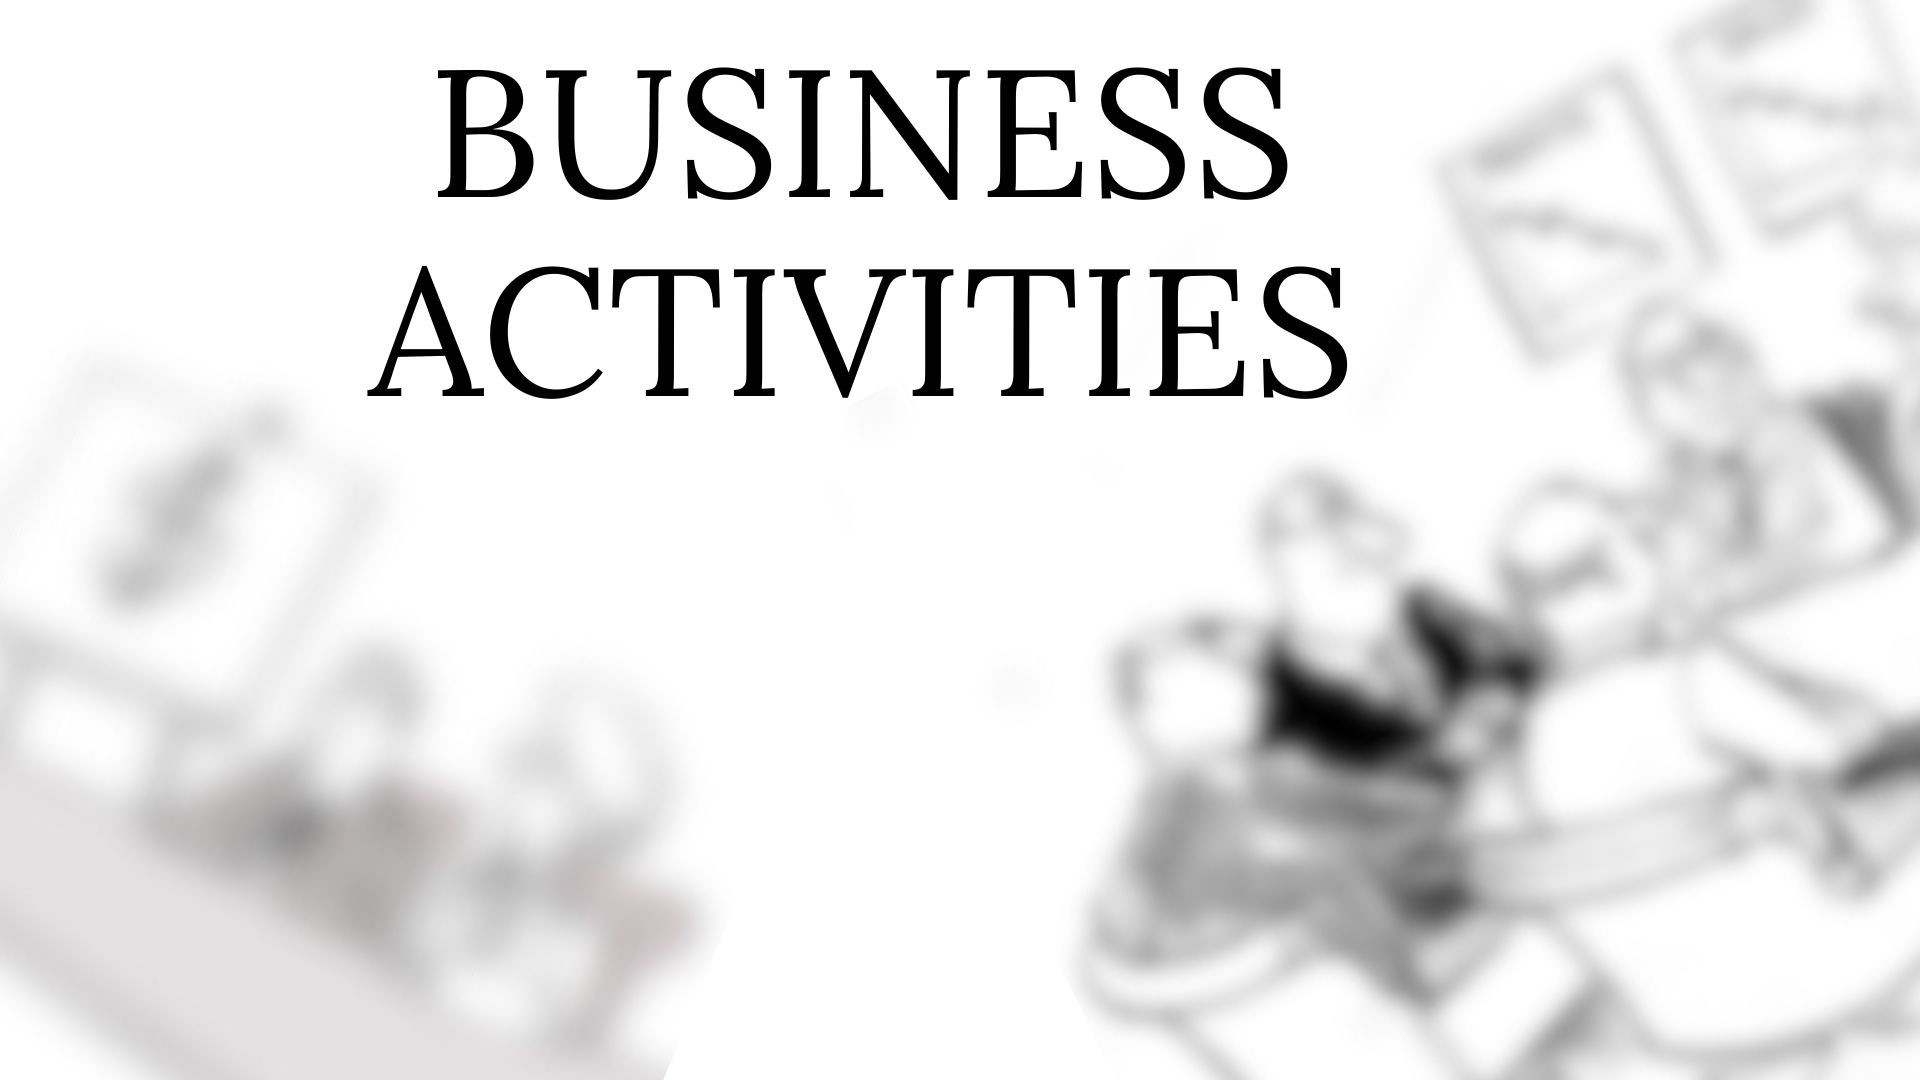 Business activities. Types of business activities